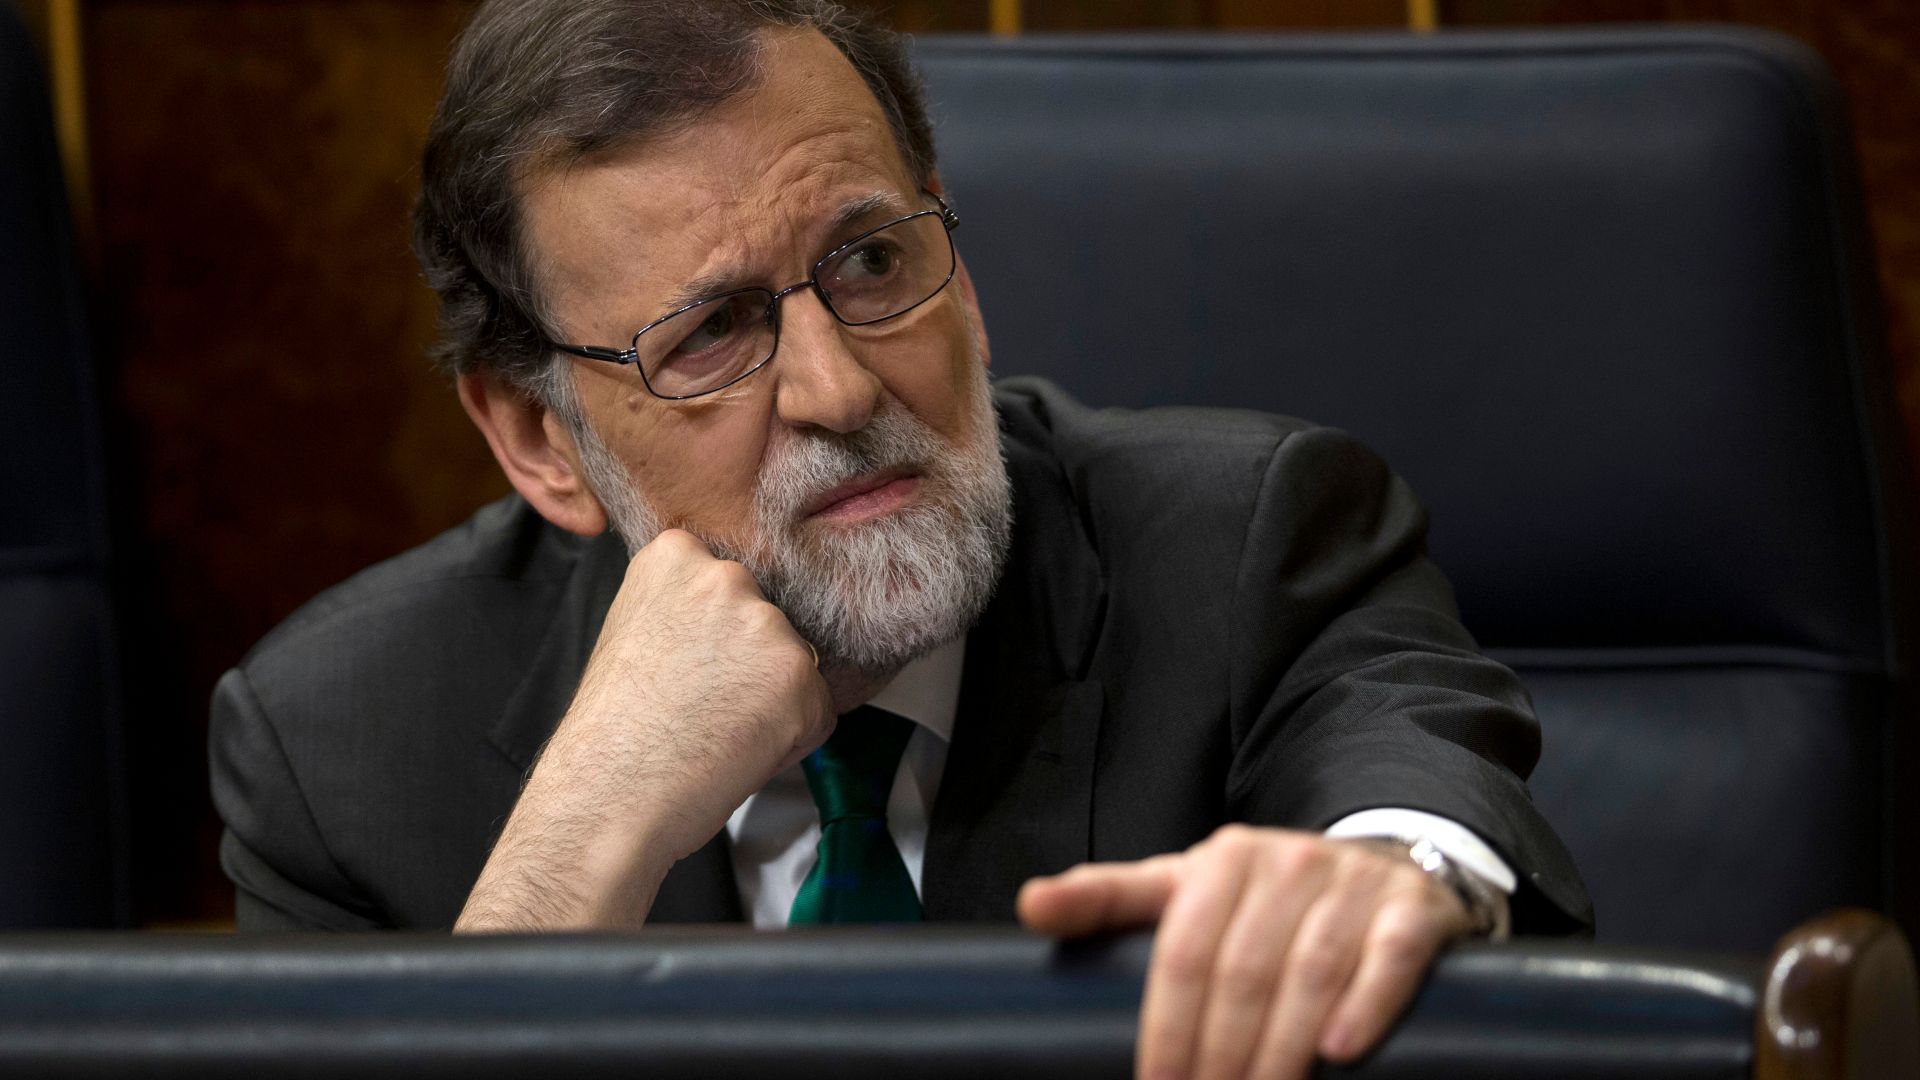 Mariano Rajoy lanza un libro: se llama 'Una España mejor' y es una crónica de sus años en Moncloa